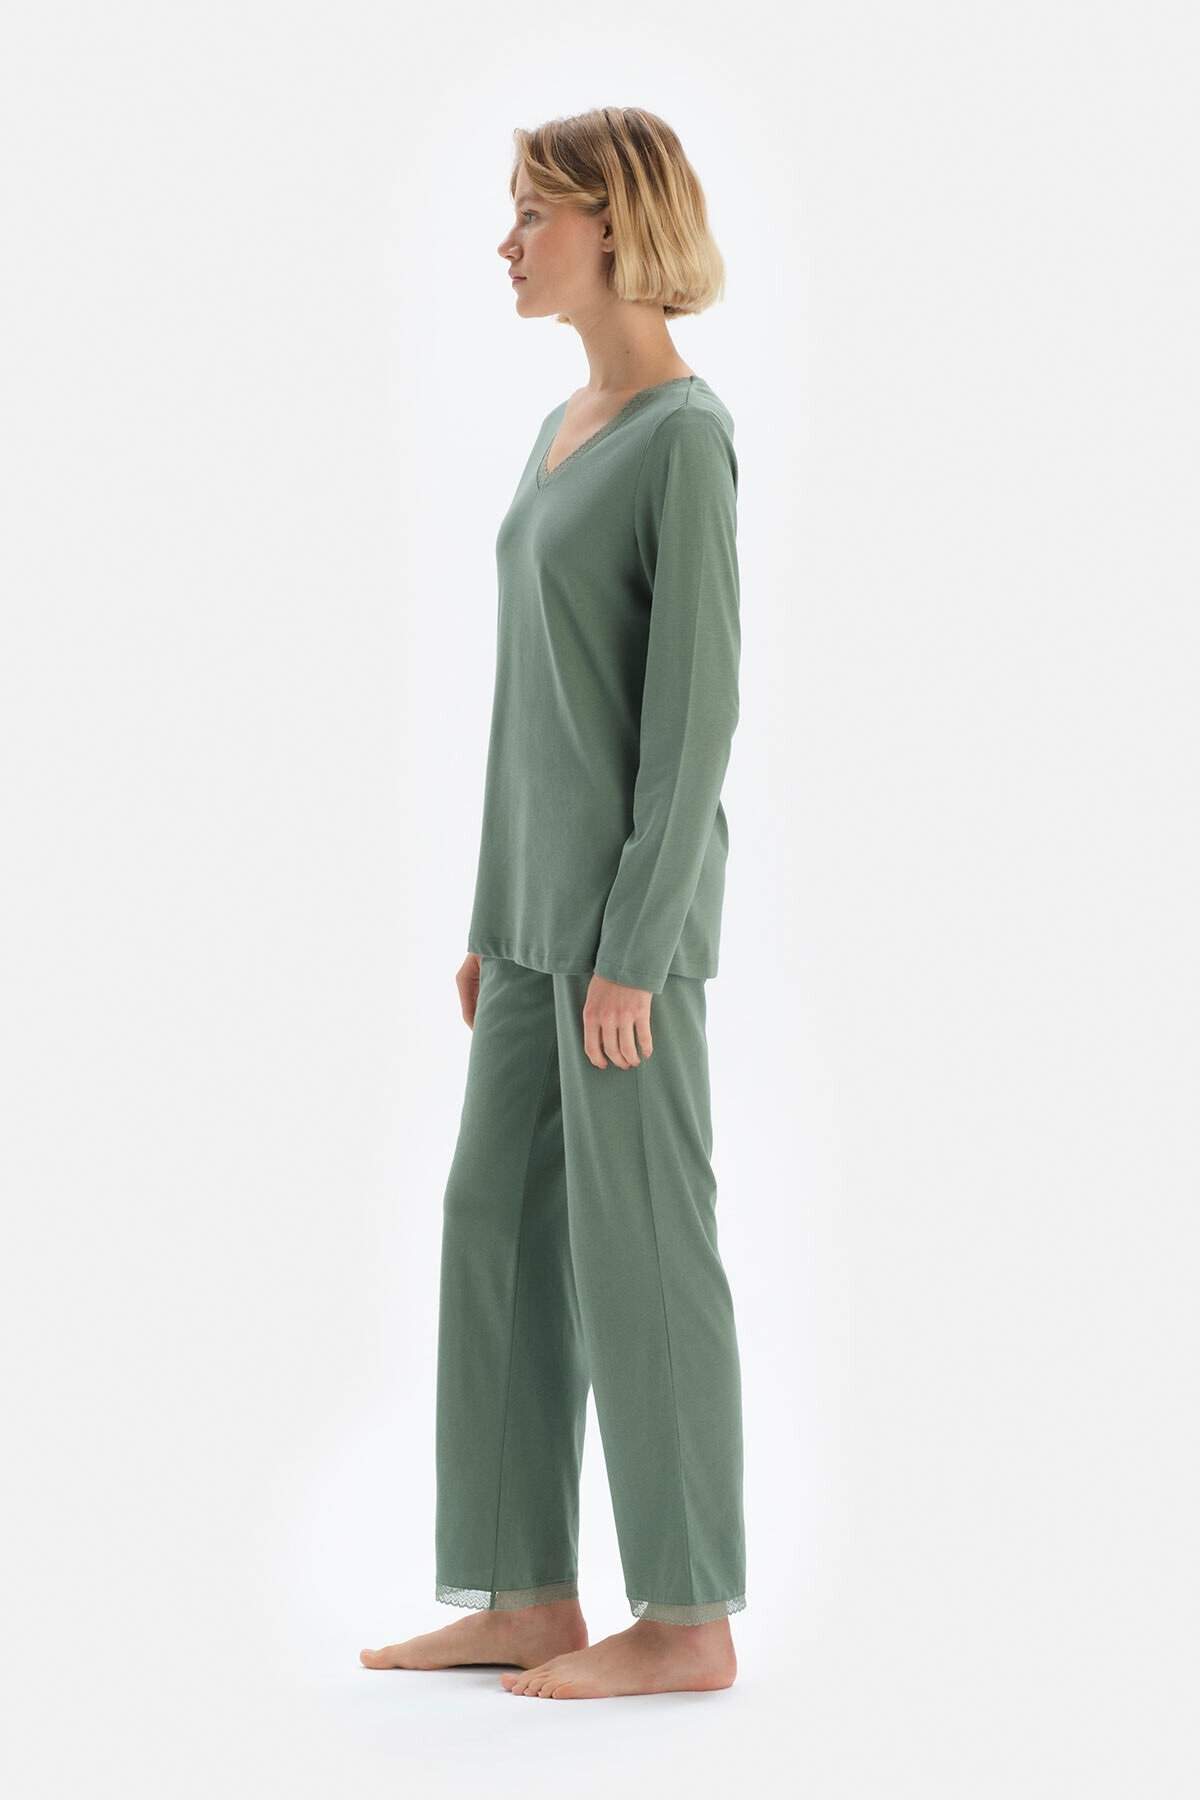 Dagi Yeşil Dantel Detaylı V Yaka Modal Kadın Pijama Takımı